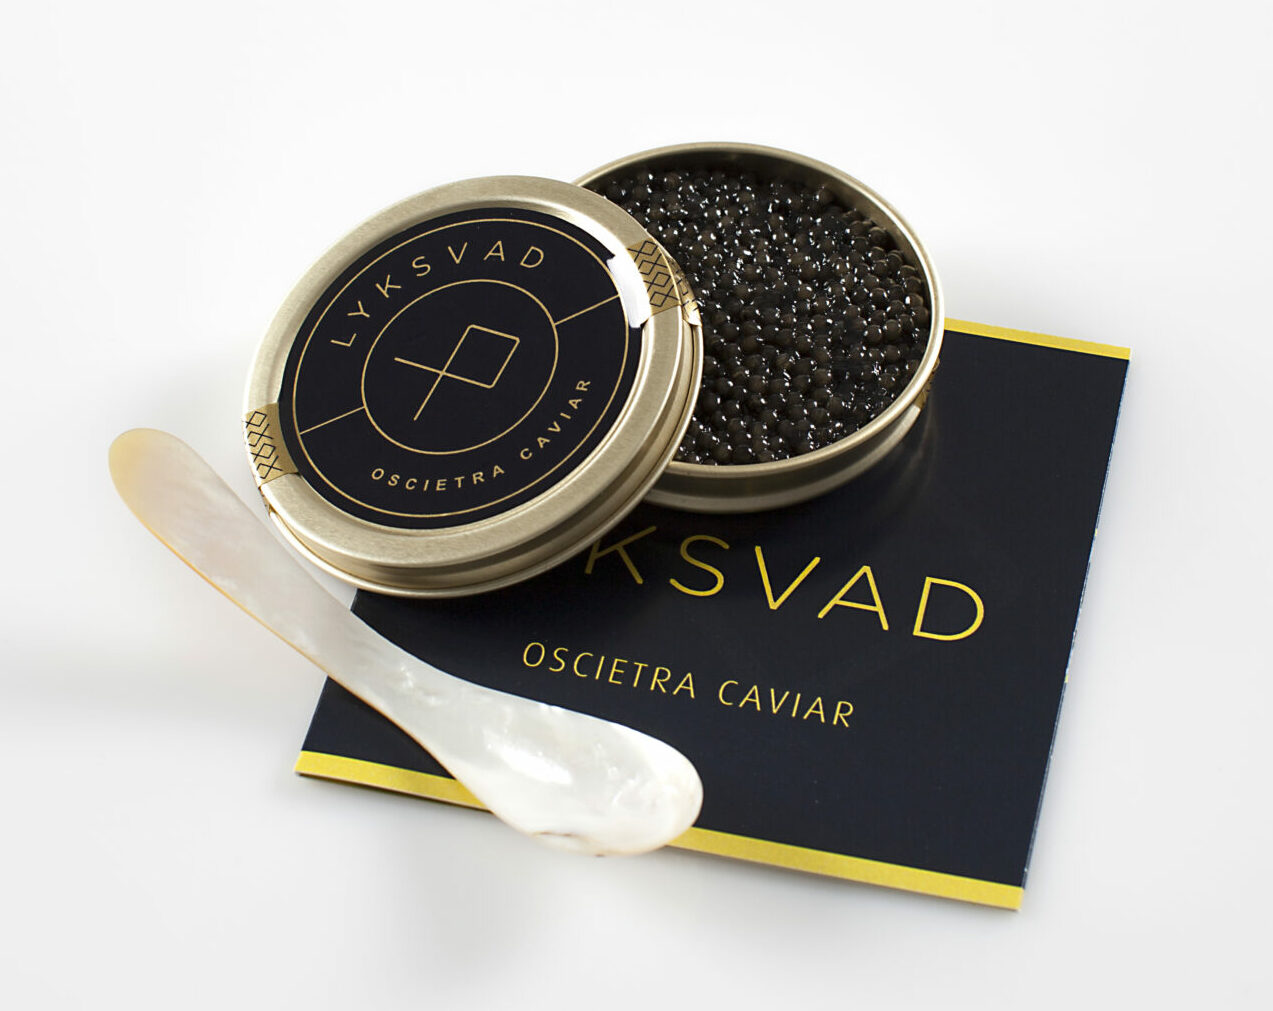 Oscietra Caviar fra Lyksvad med perlemors ske